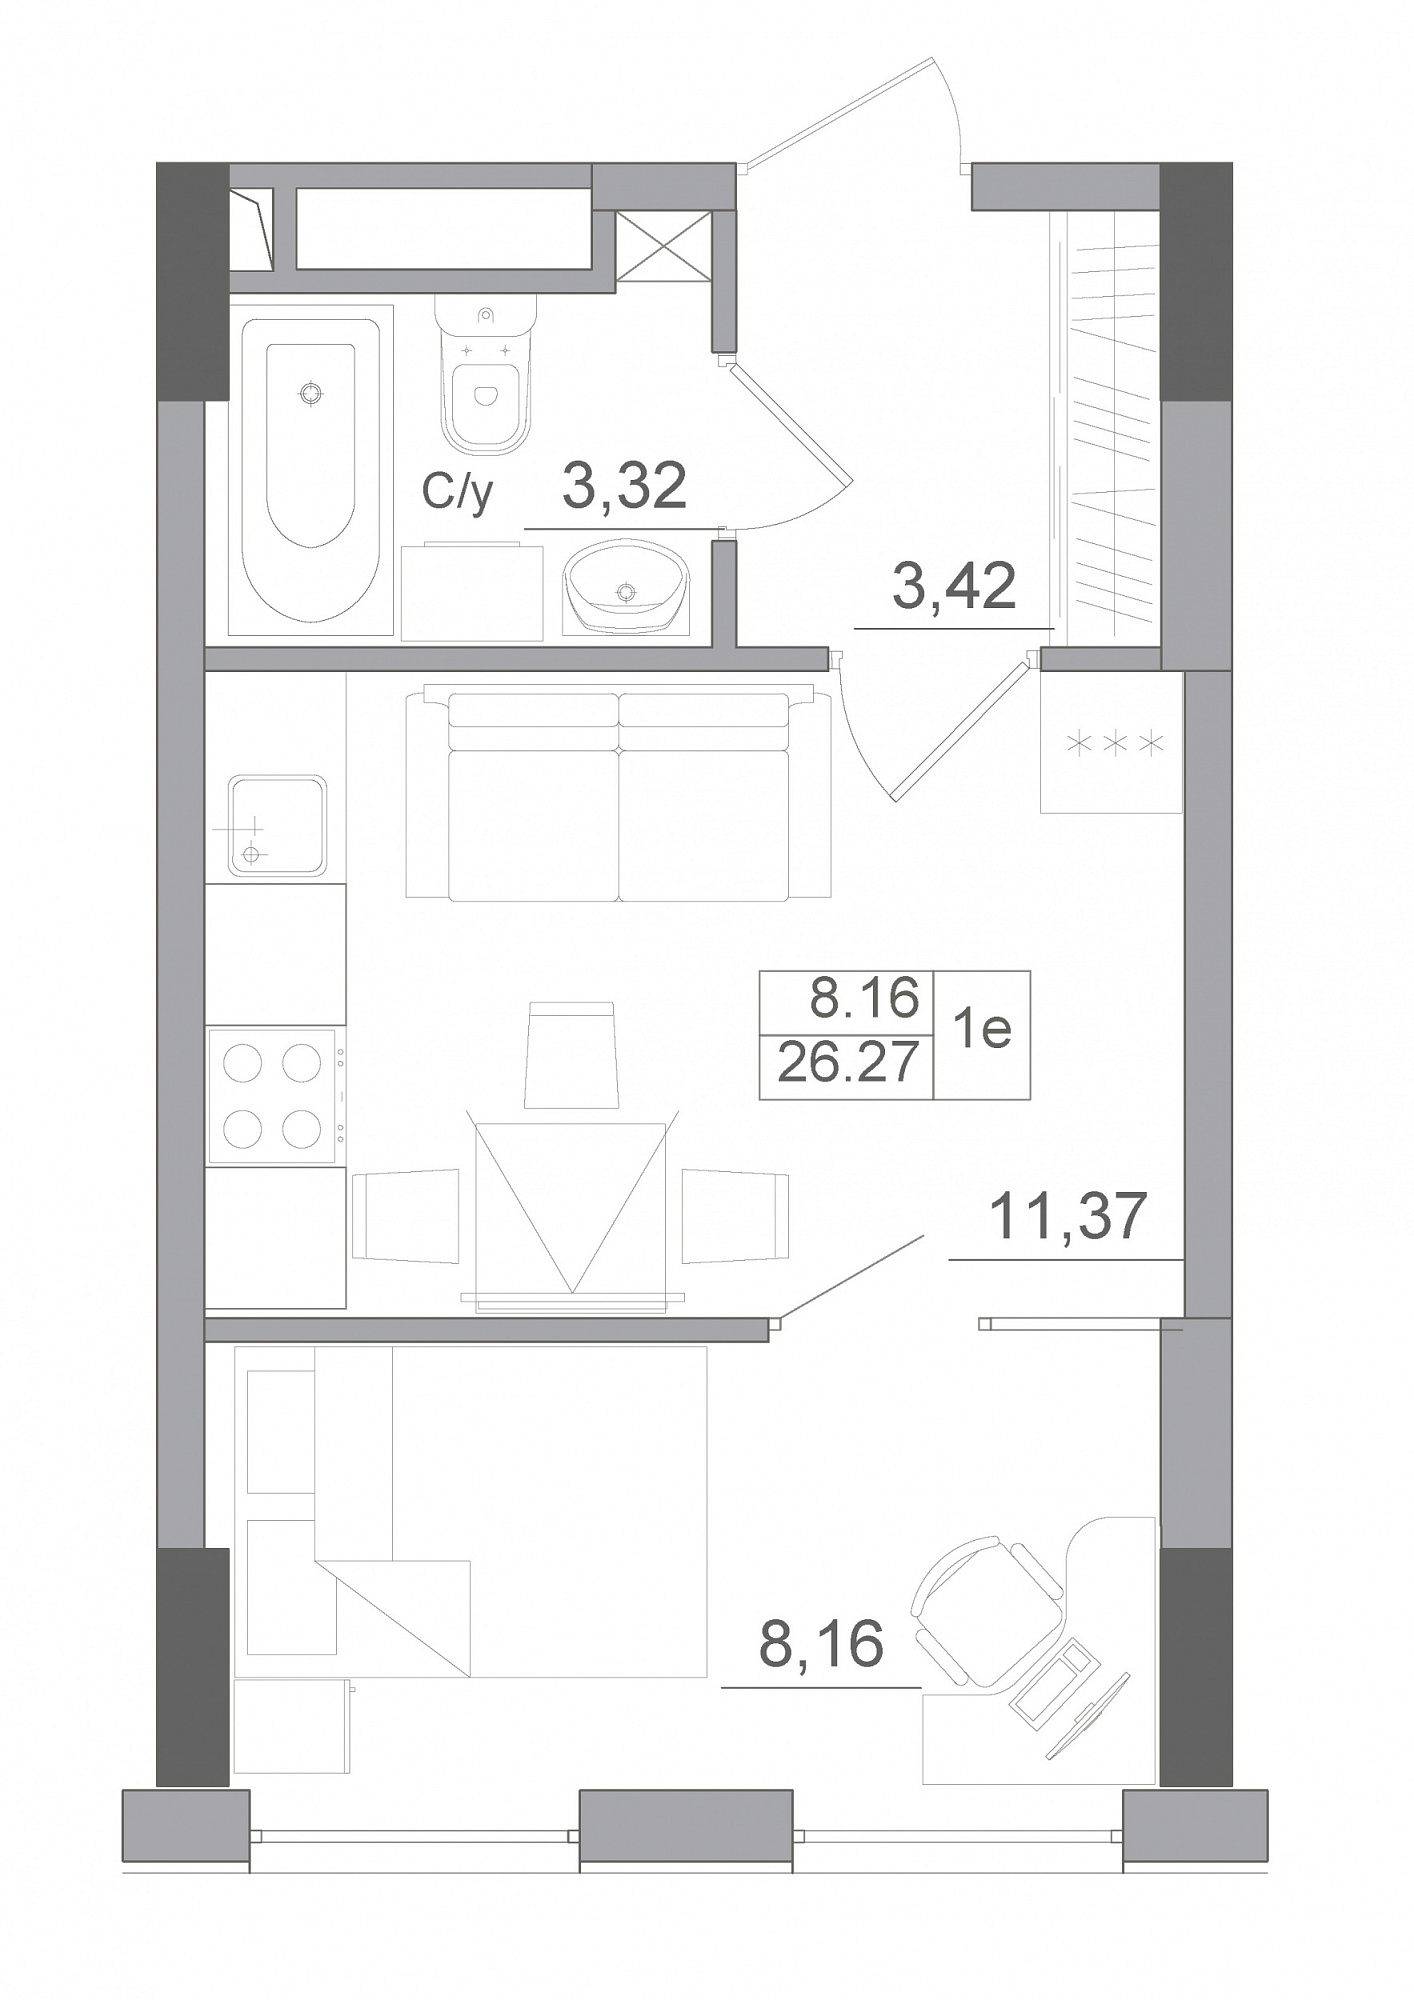 Планировка 1-к квартира площей 26.27м2, AB-22-08/00009.